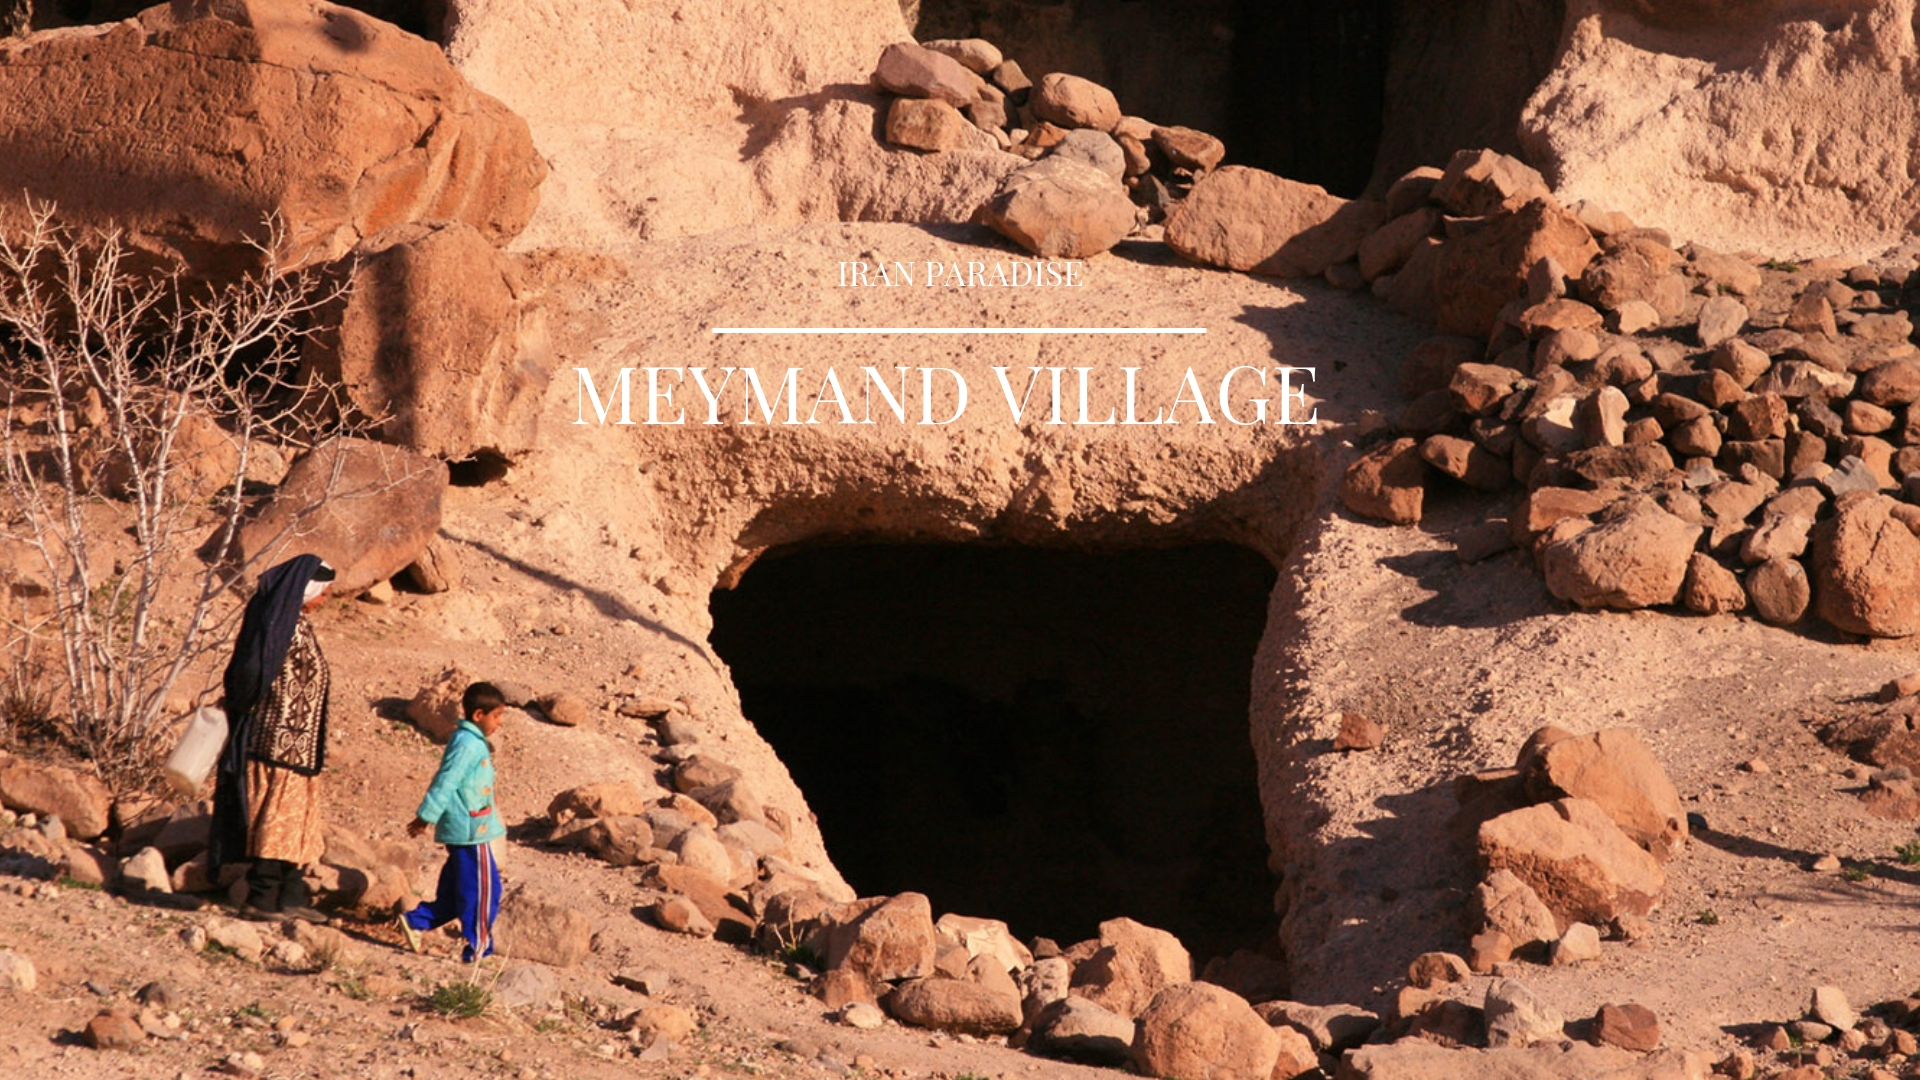 Meymand Village